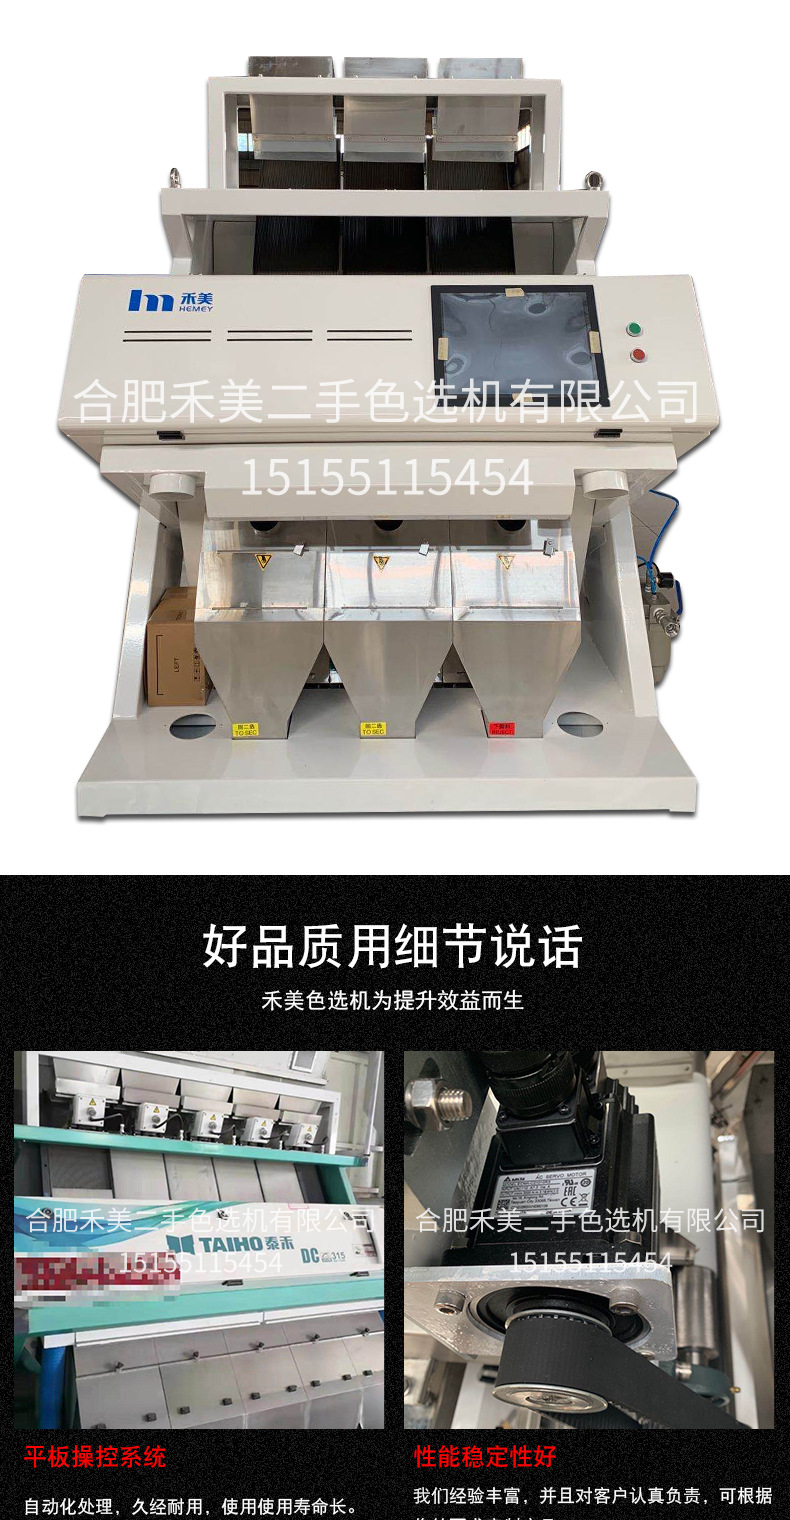 厂家直销茶叶色选机多功能茶叶大米谷物农产品色选机大米色选机